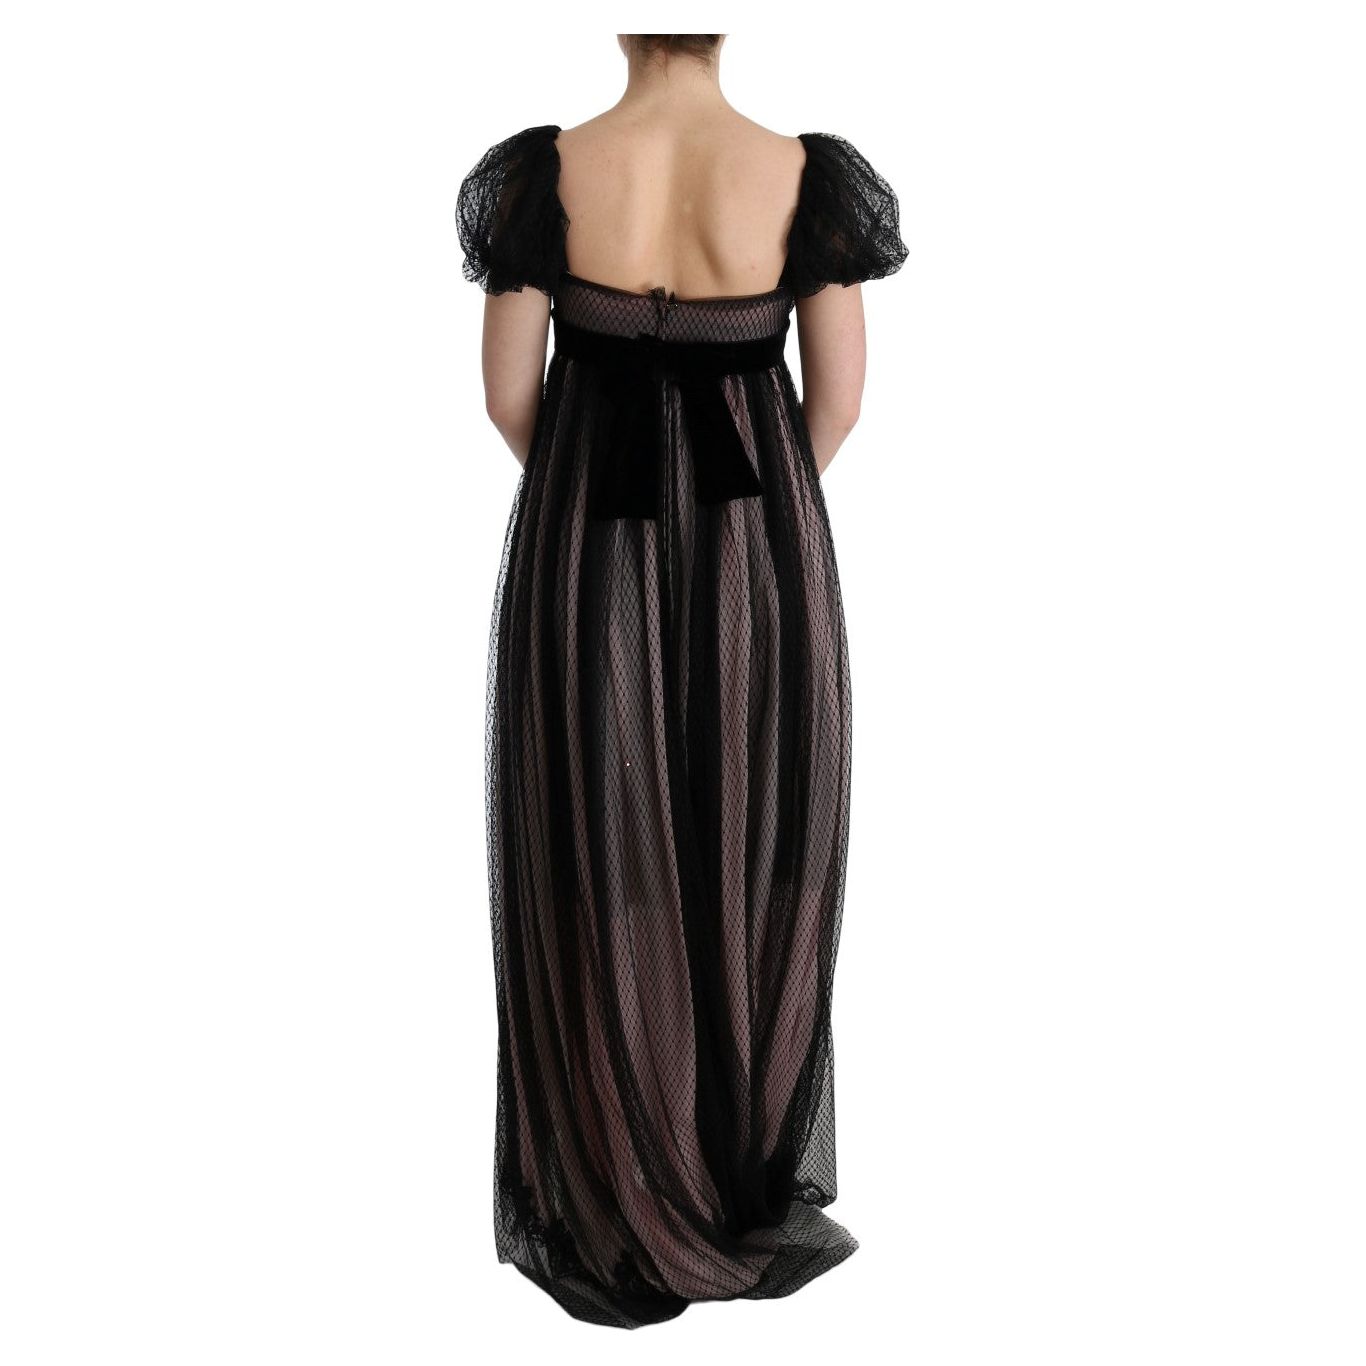 Dolce & Gabbana Elegant Full Length Shift Dress black-pink-silk-long-shift-dress 445560-black-pink-silk-long-shift-dress-2.jpg